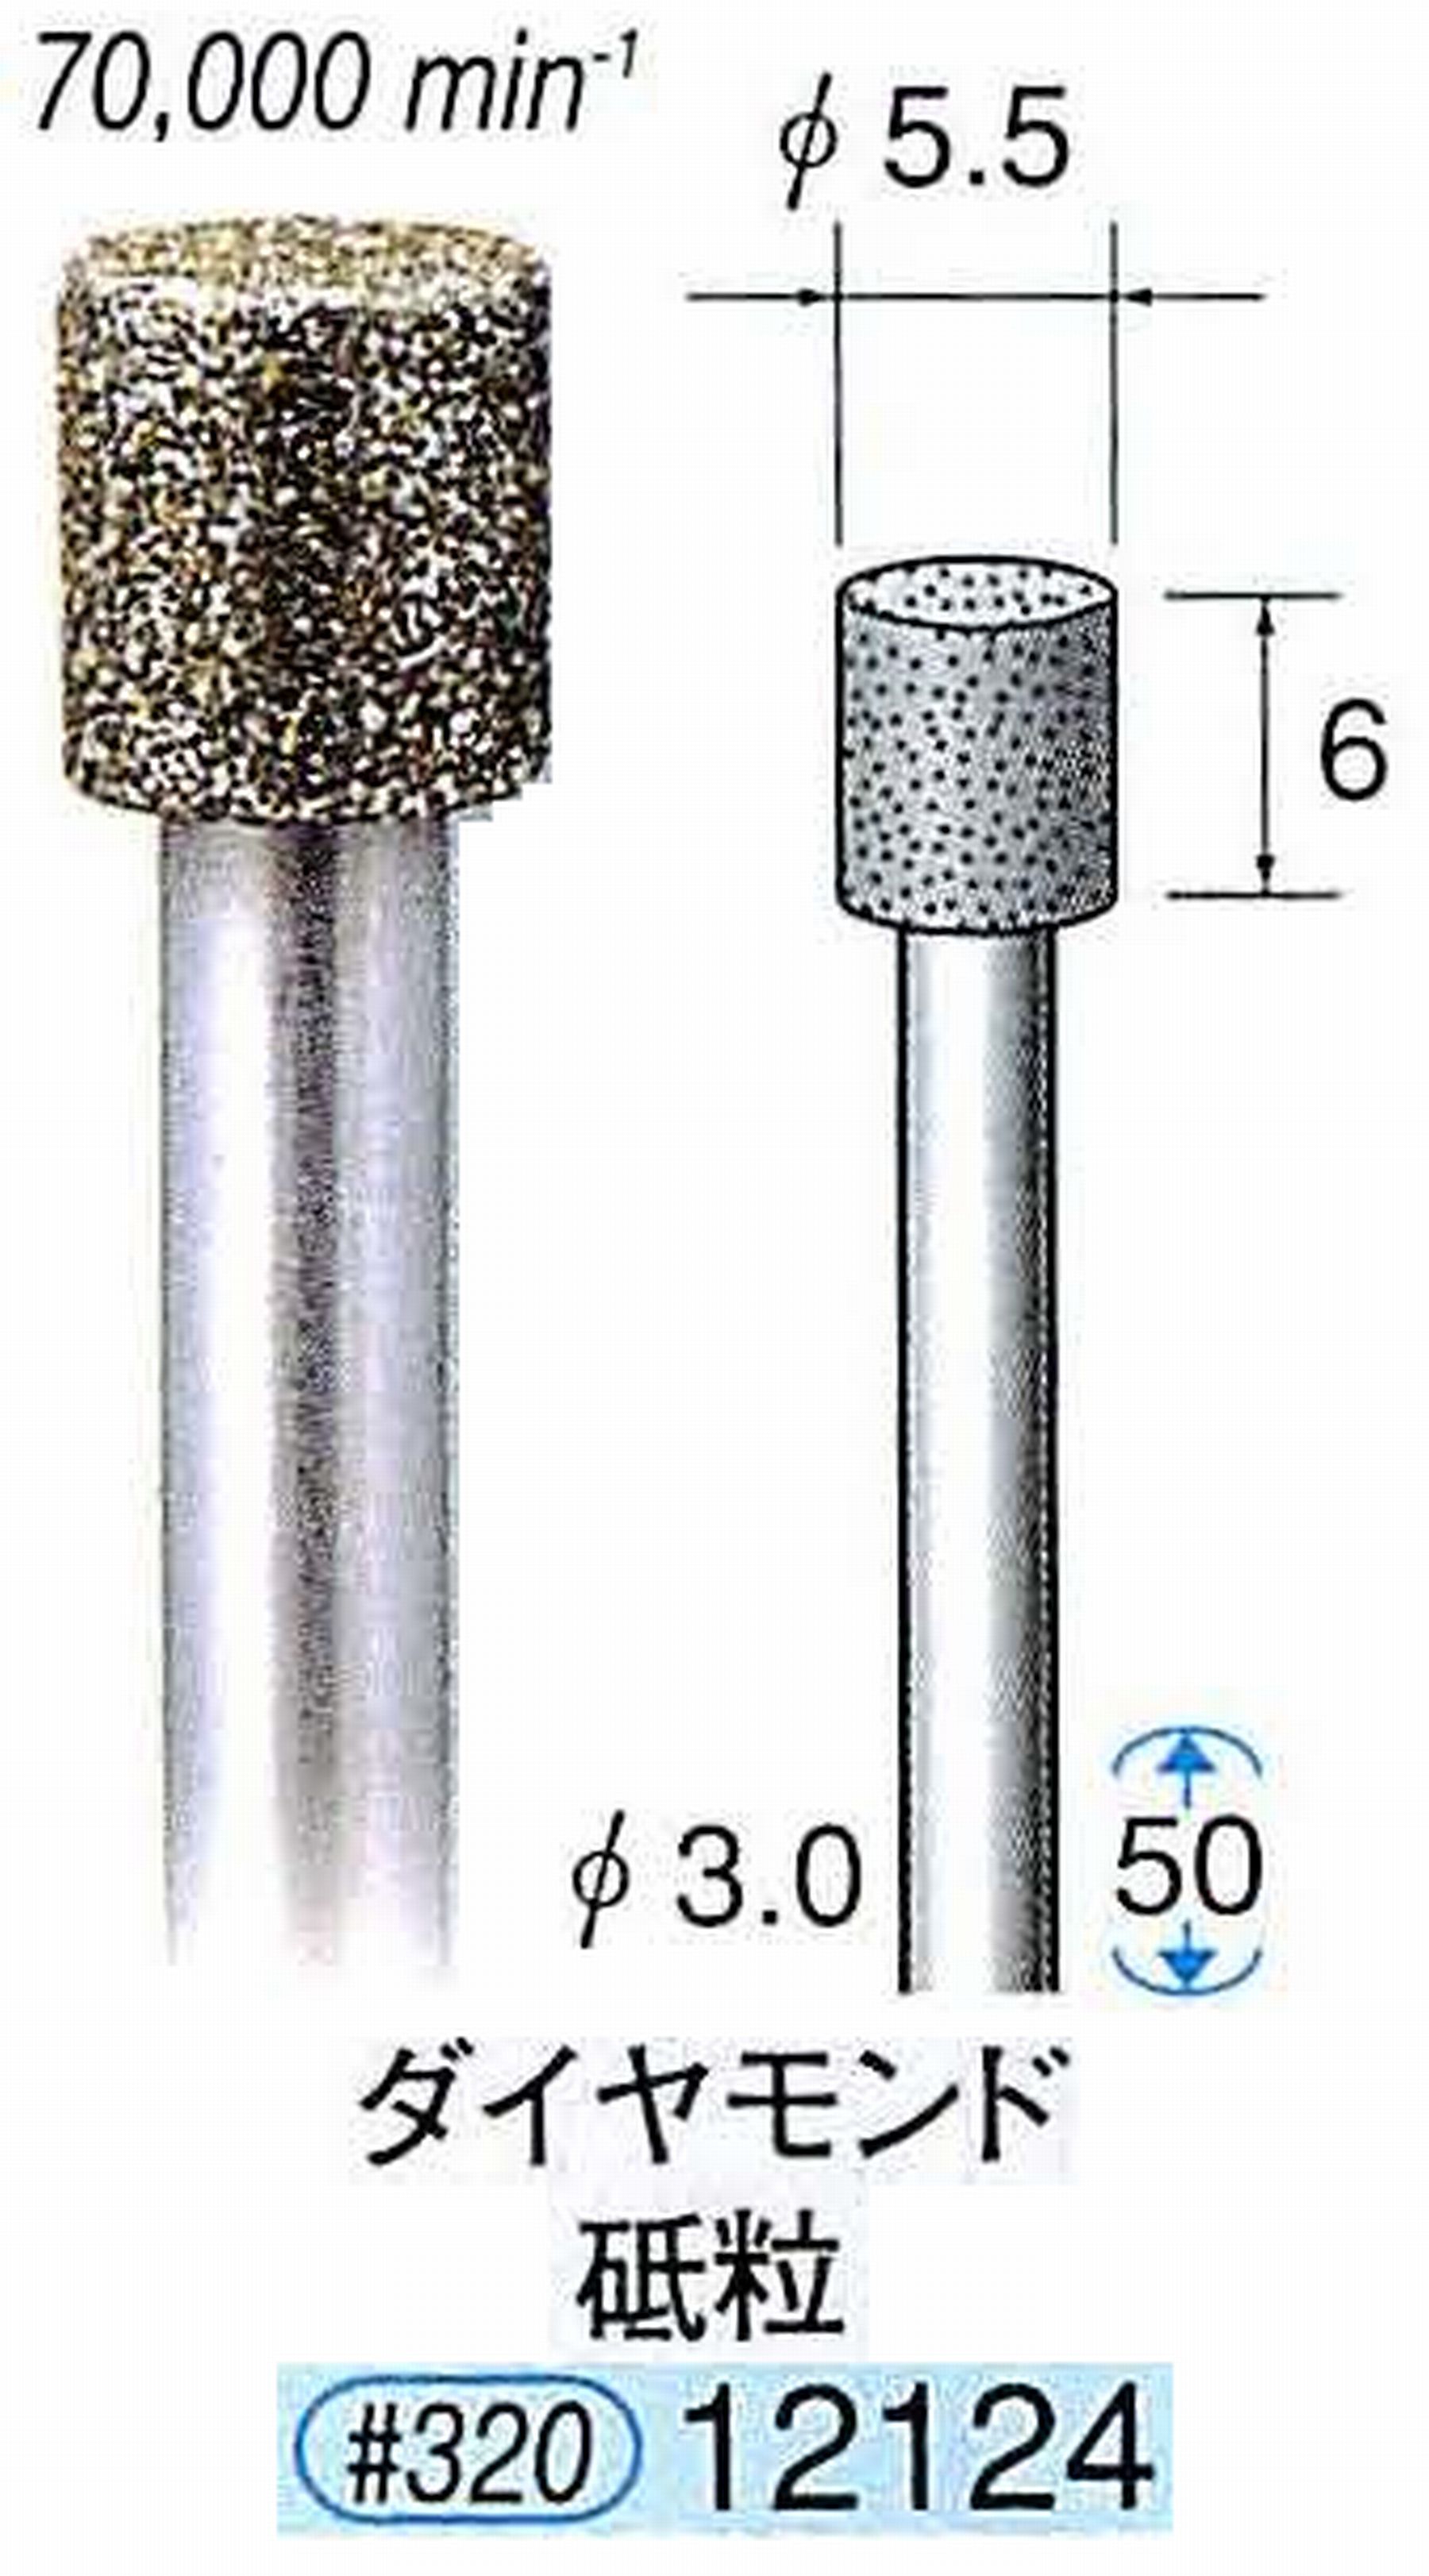 ナカニシ/NAKANISHI 電着ダイヤモンド ダイヤモンド砥粒 軸径(シャンク)φ3.0mm 12124